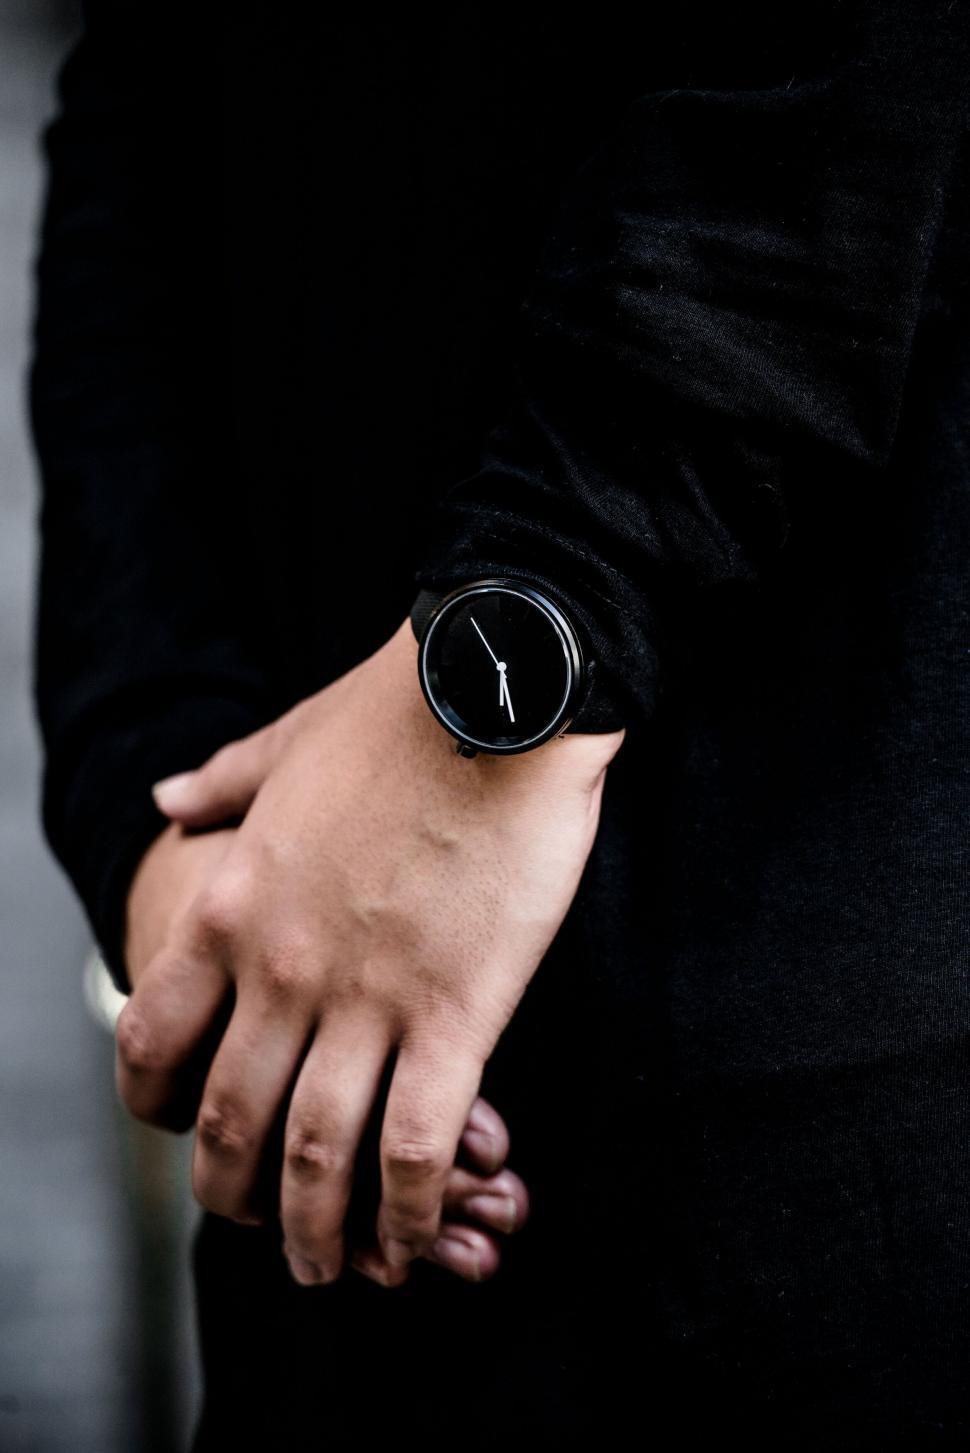 Free Image of Stylish minimalist watch on a wrist 